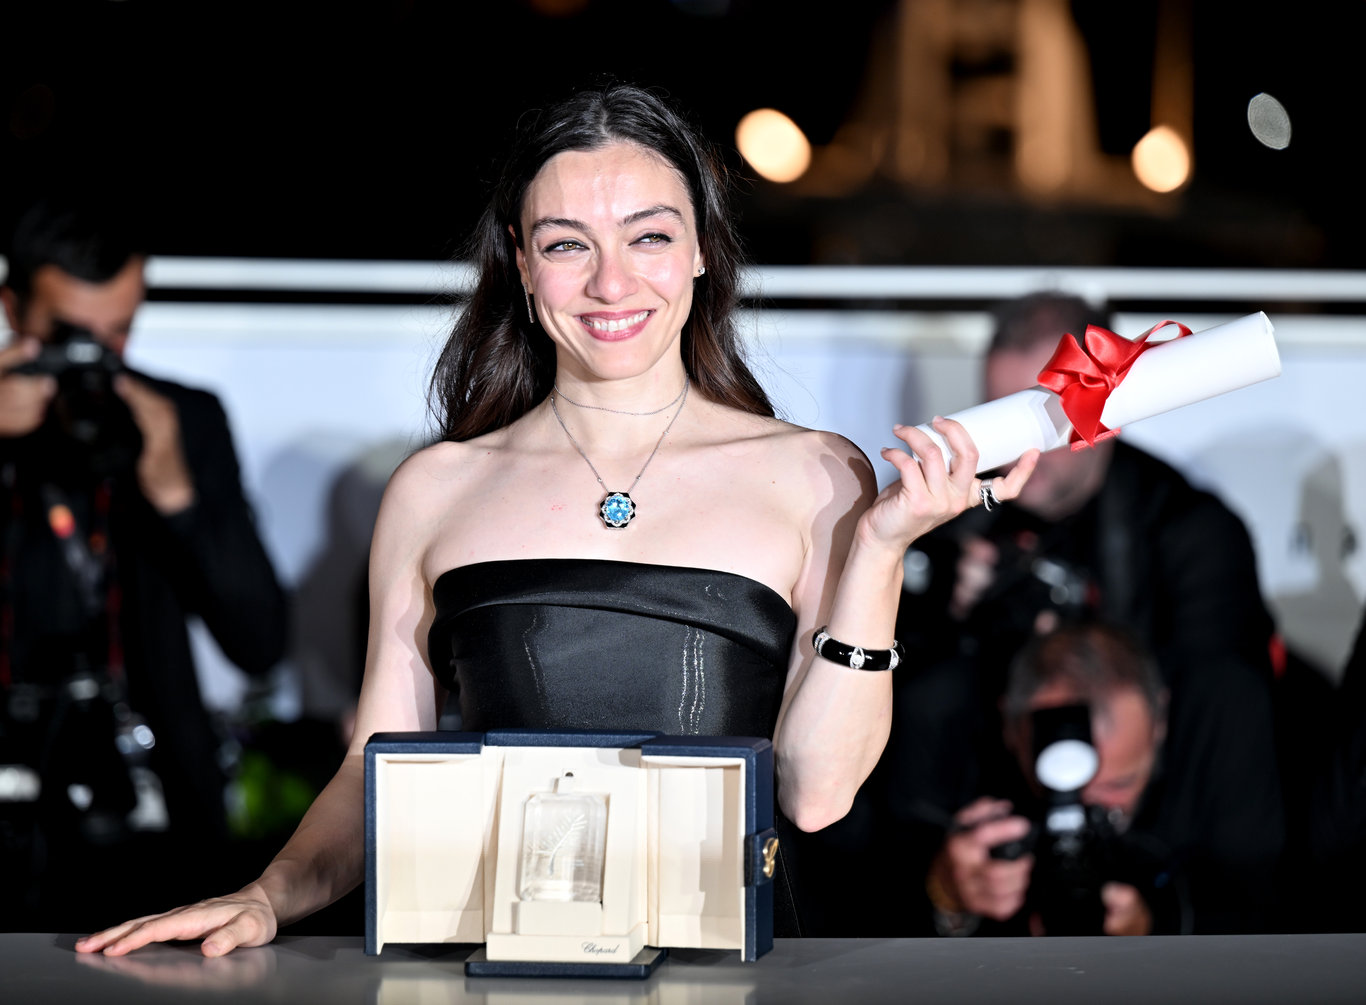 Oyuncu Merve Dizdar, Cannes Film Festivali'nde ödül kazanan ilk Türk kadın olmayı başardı - Magazin Haberleri